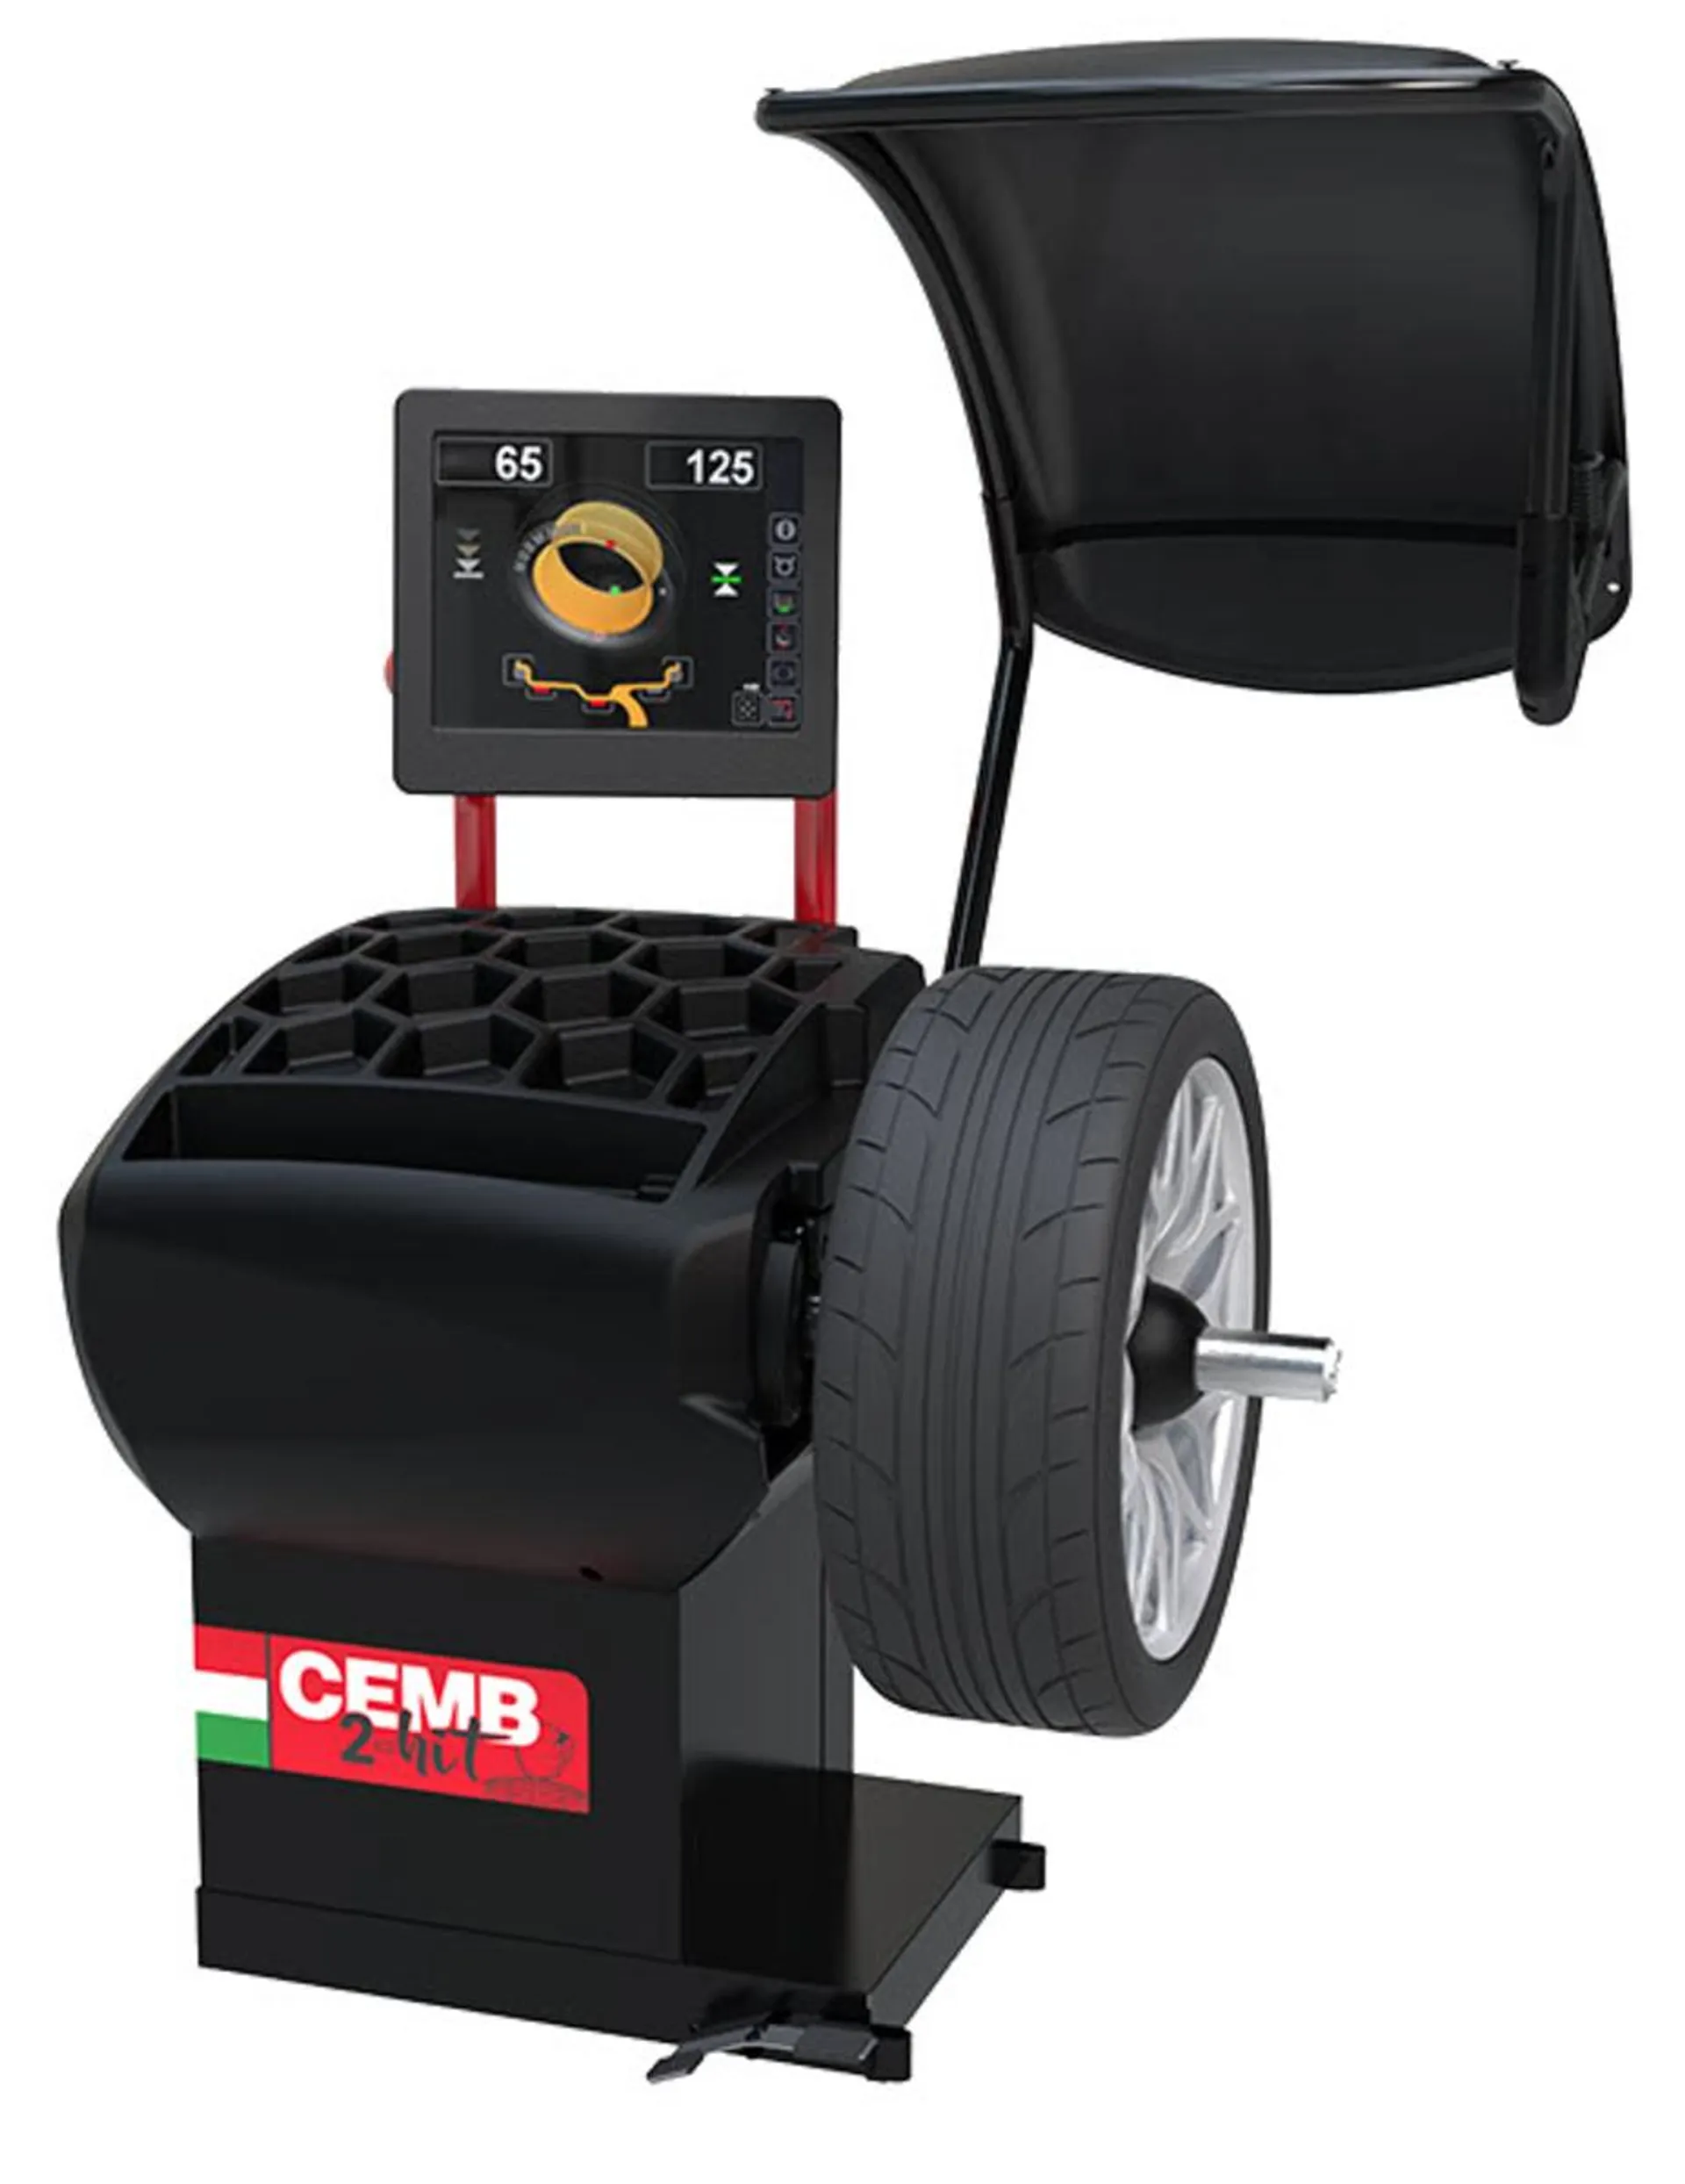 CEMB 2-HIT Digital Wheel Balancer with Pneumatic Locking